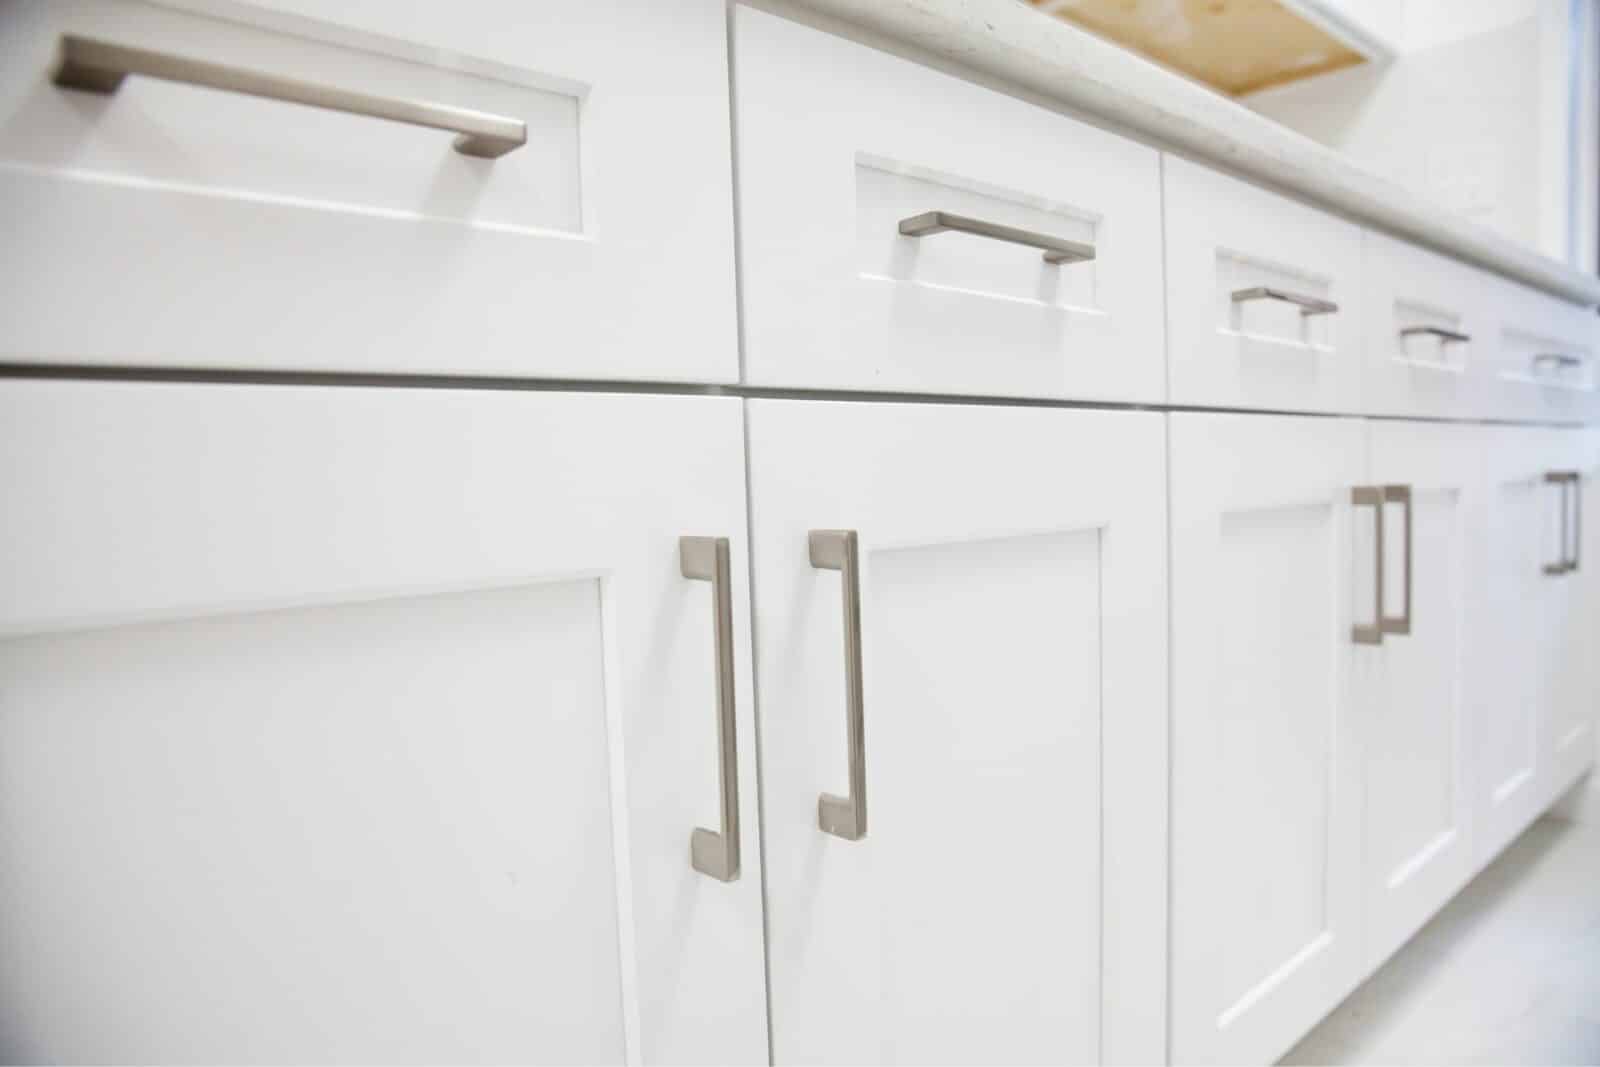 diy kitchen cabinet doors